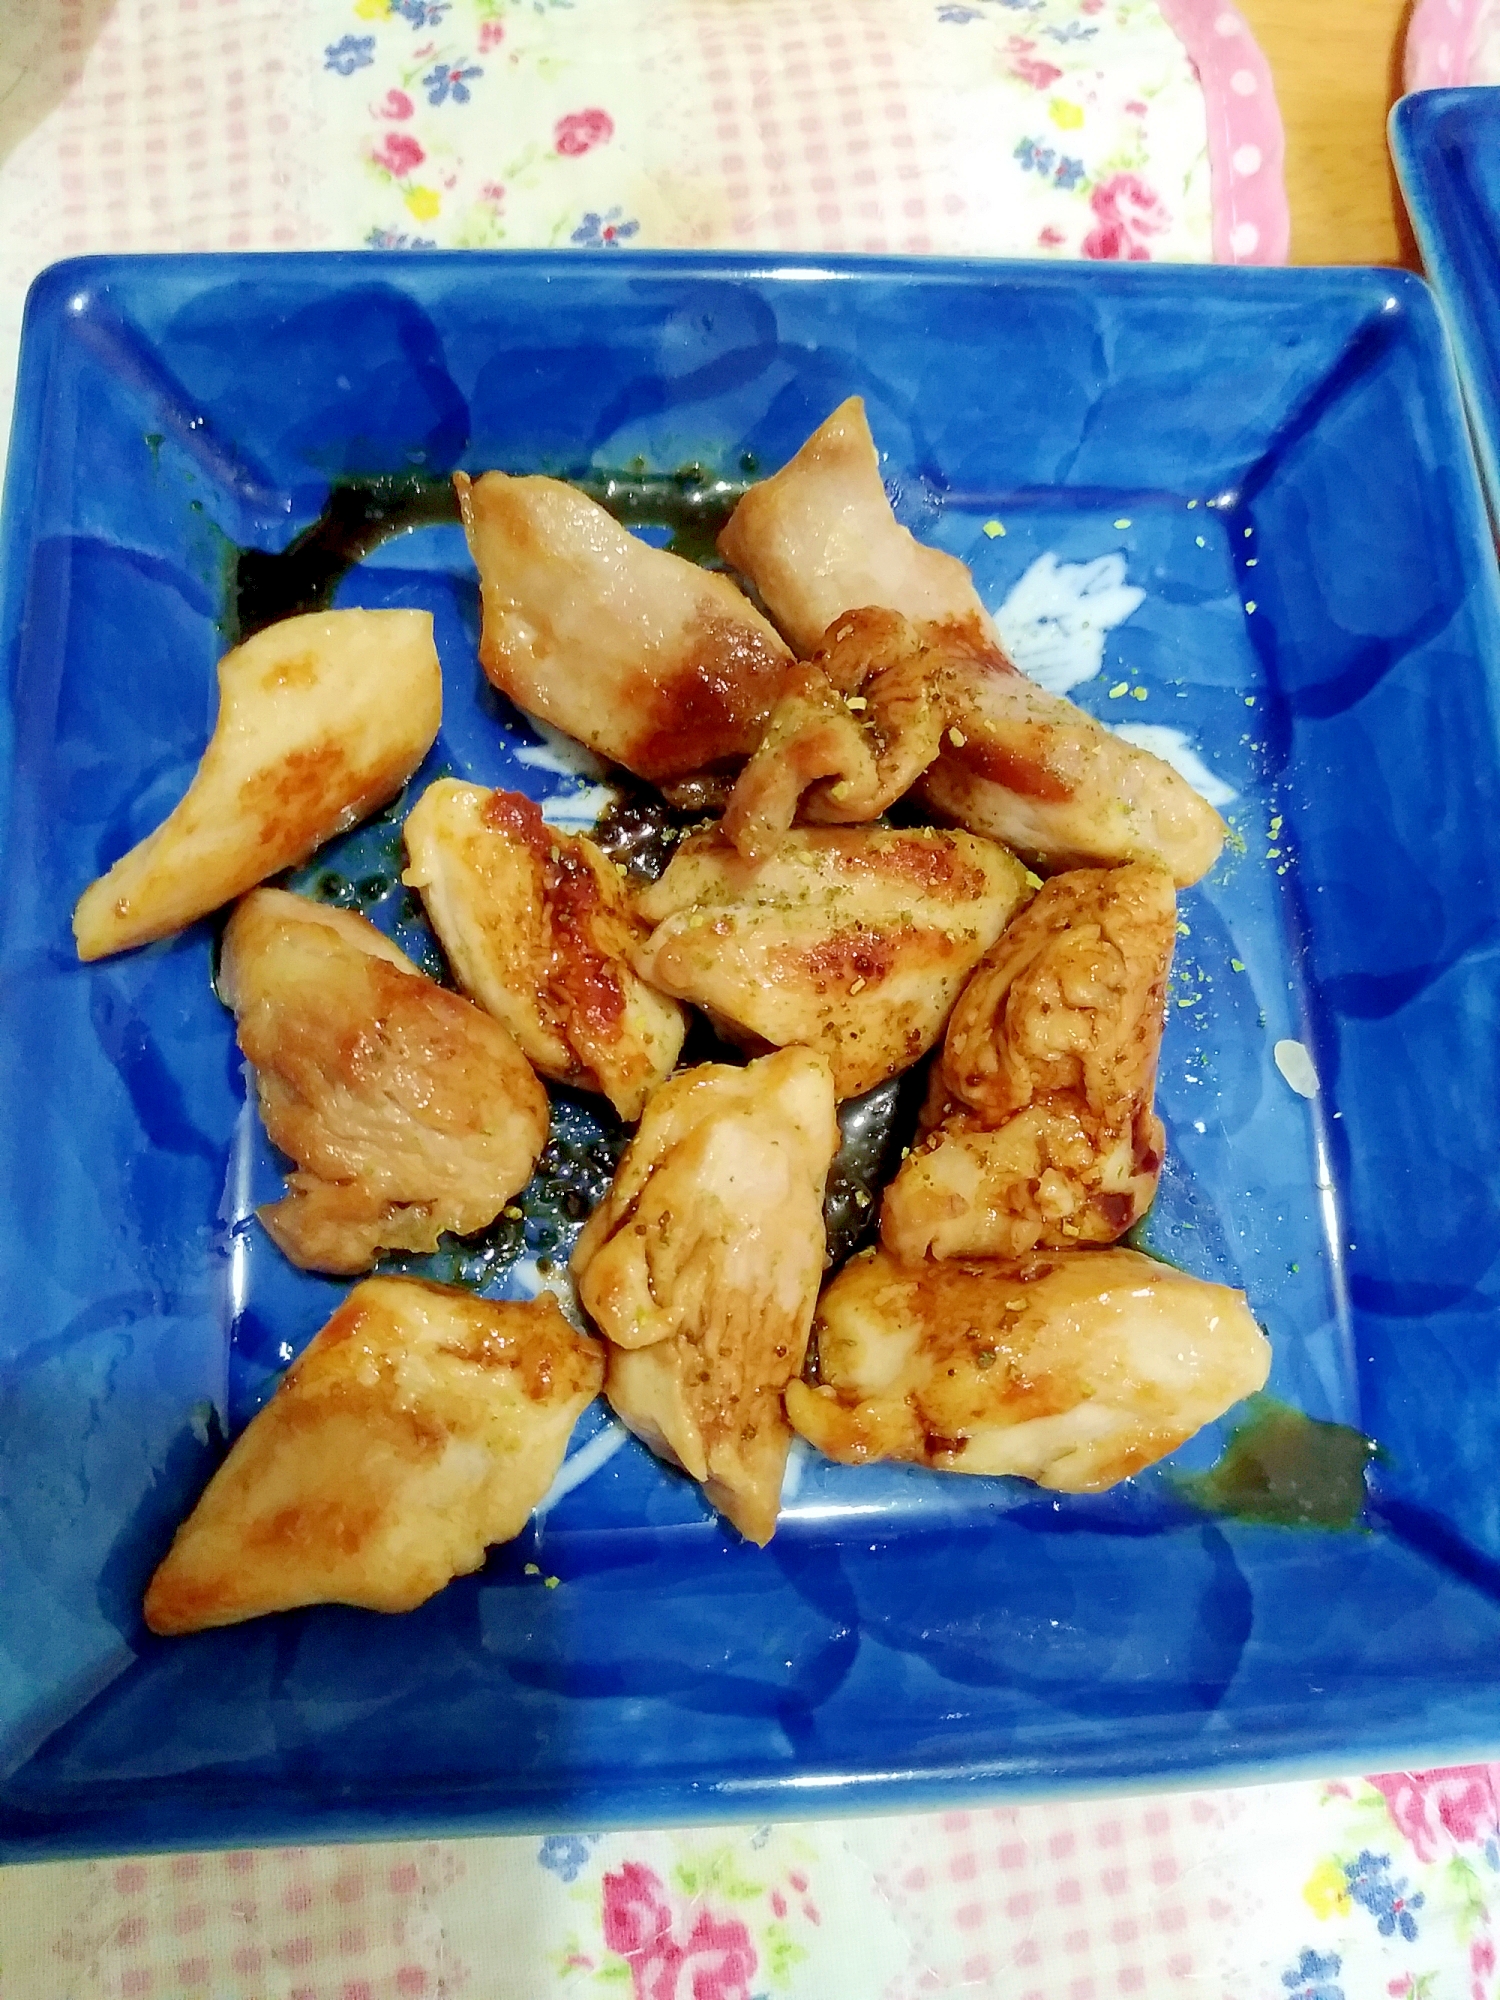 焼くだけ簡単 山椒が効いた鶏肉の山椒焼き レシピ 作り方 By Mariron 楽天レシピ